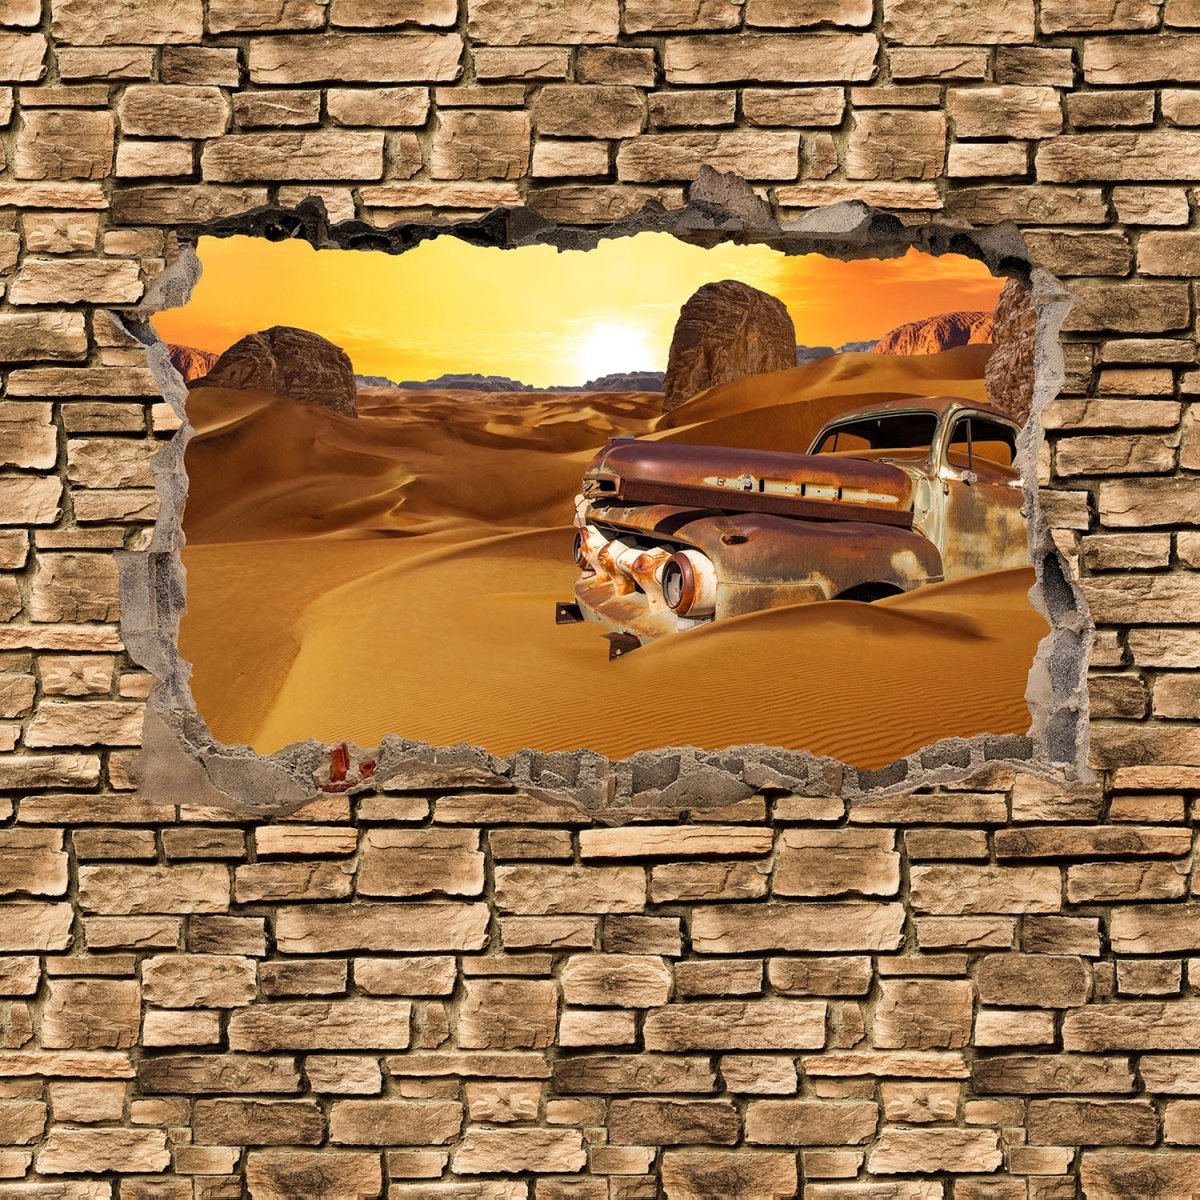 Beistelltisch 3D Altes Auto in der Wüste -Steinmauer M0674 entdecken - Bild 2